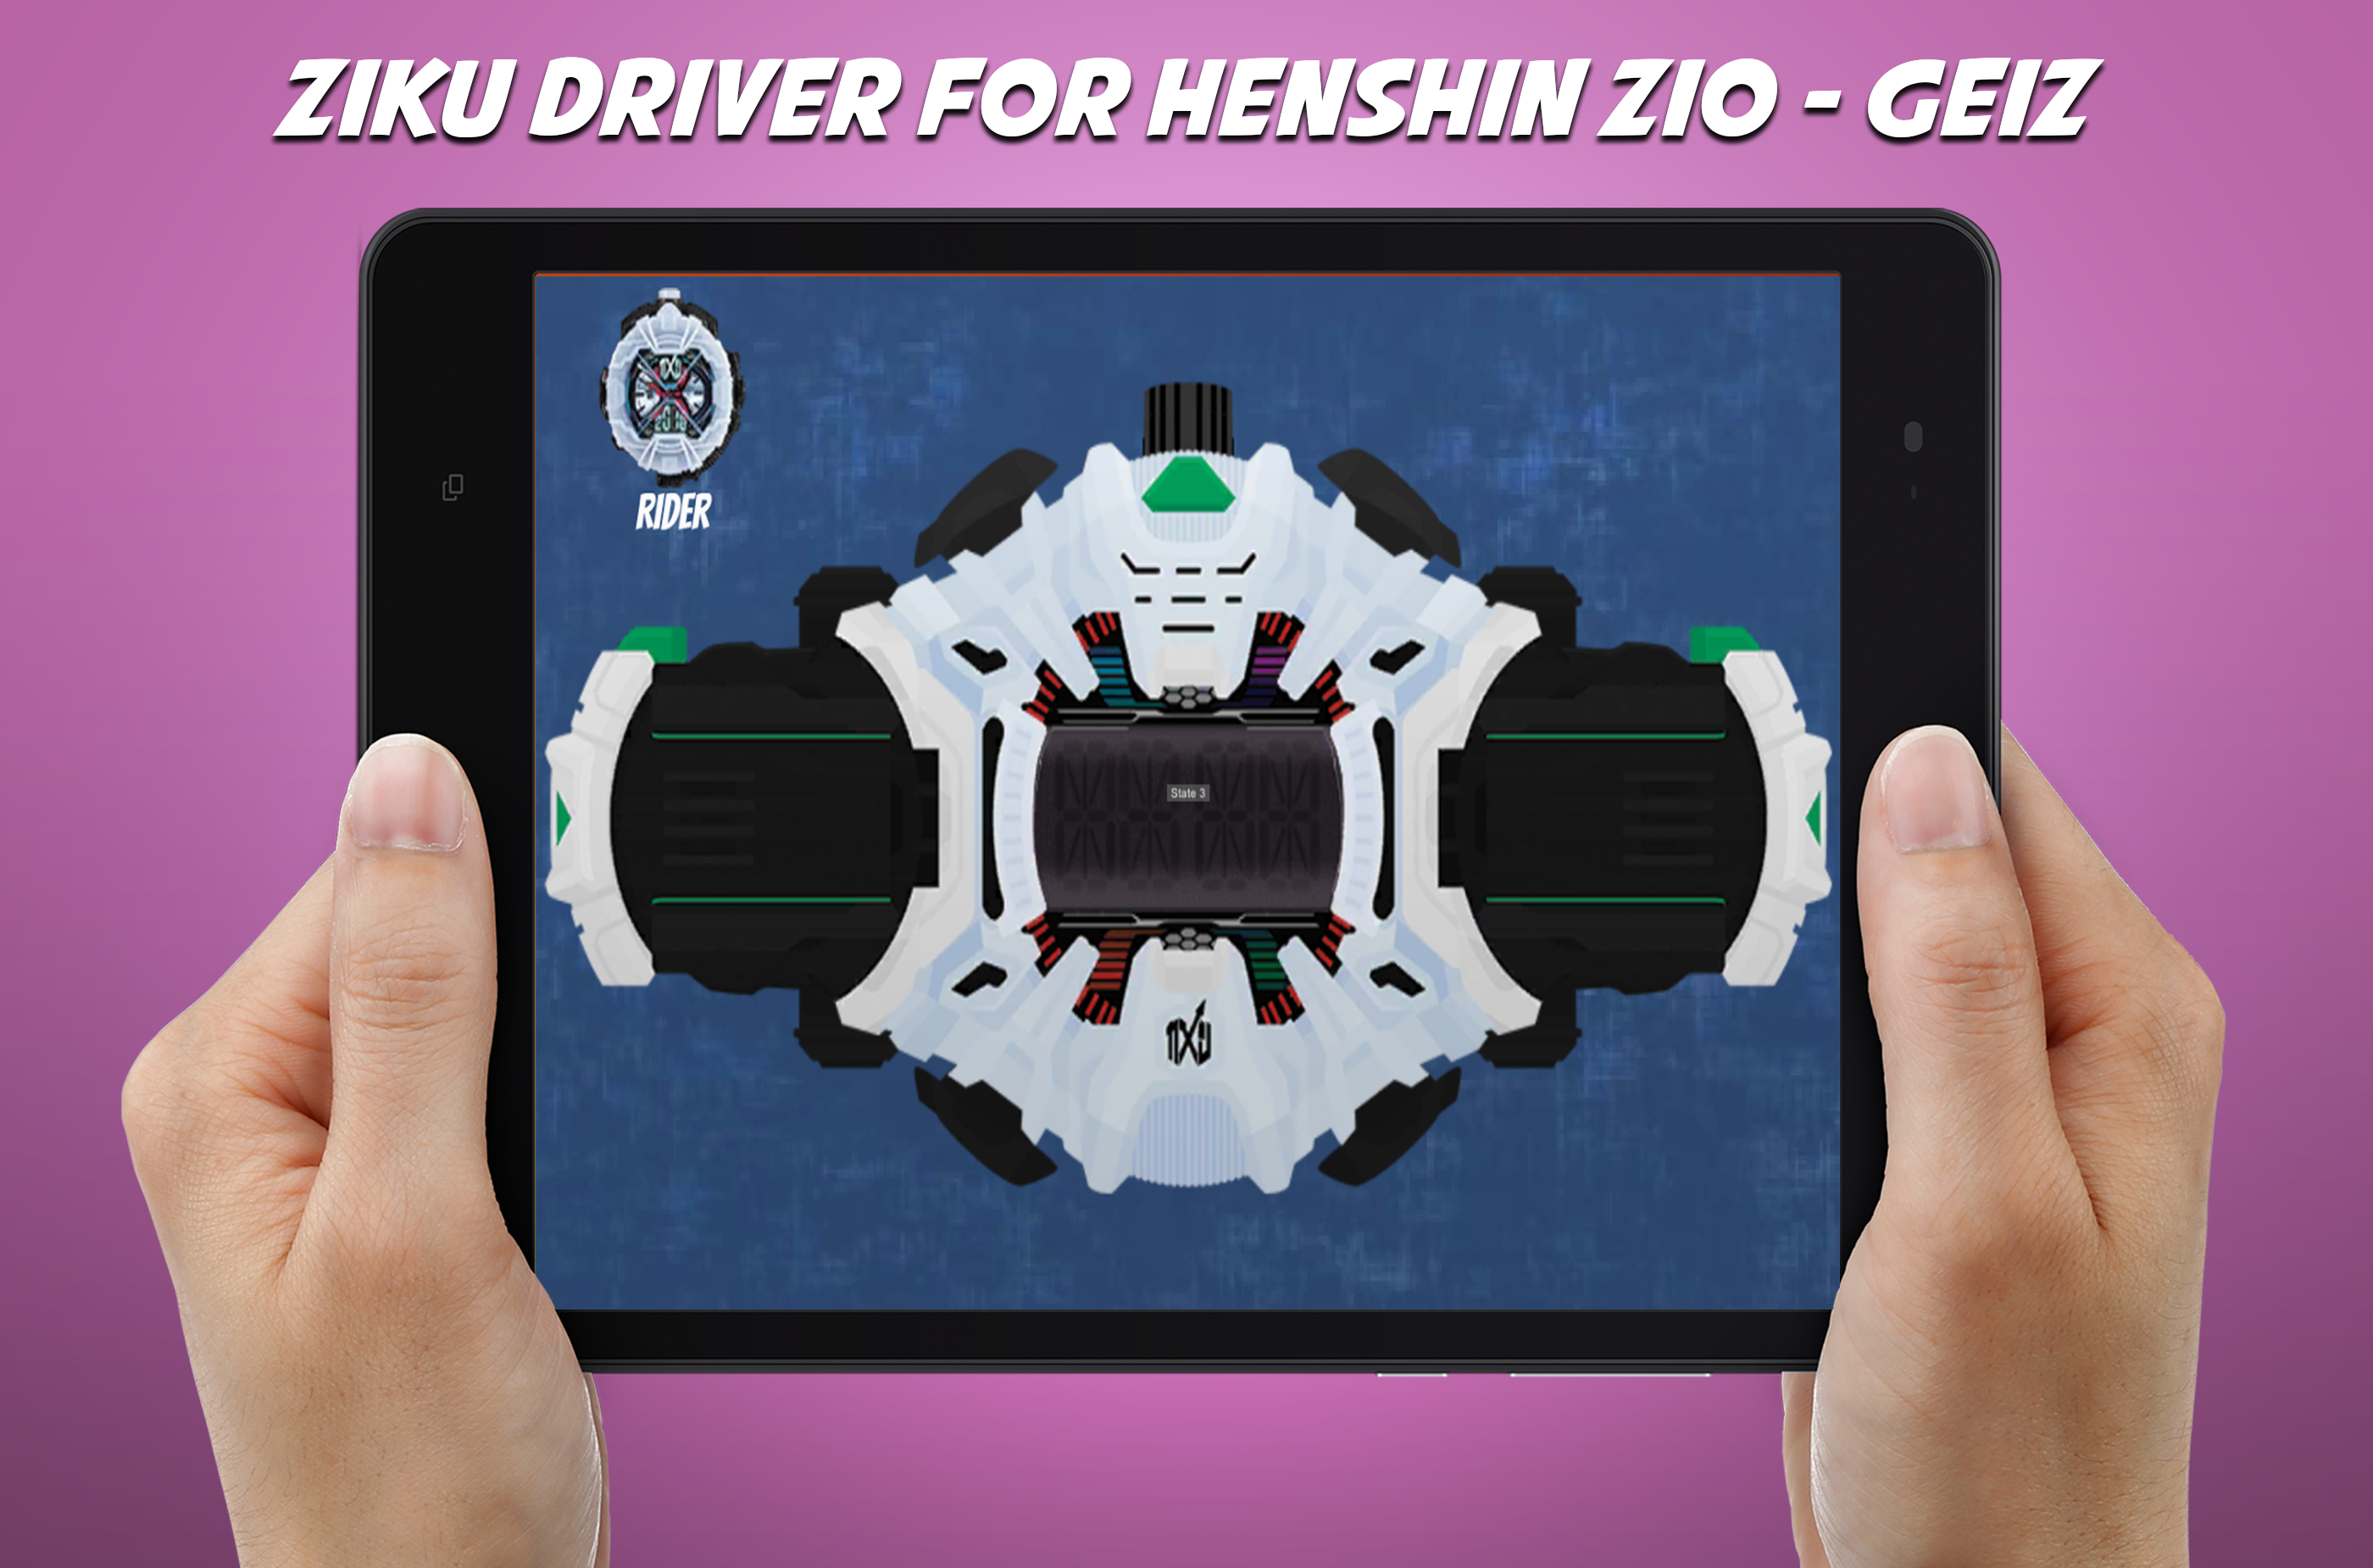 Screenshot 1 of Trình điều khiển DX Ziku cho đai henshin Zio - Geiz 2.0